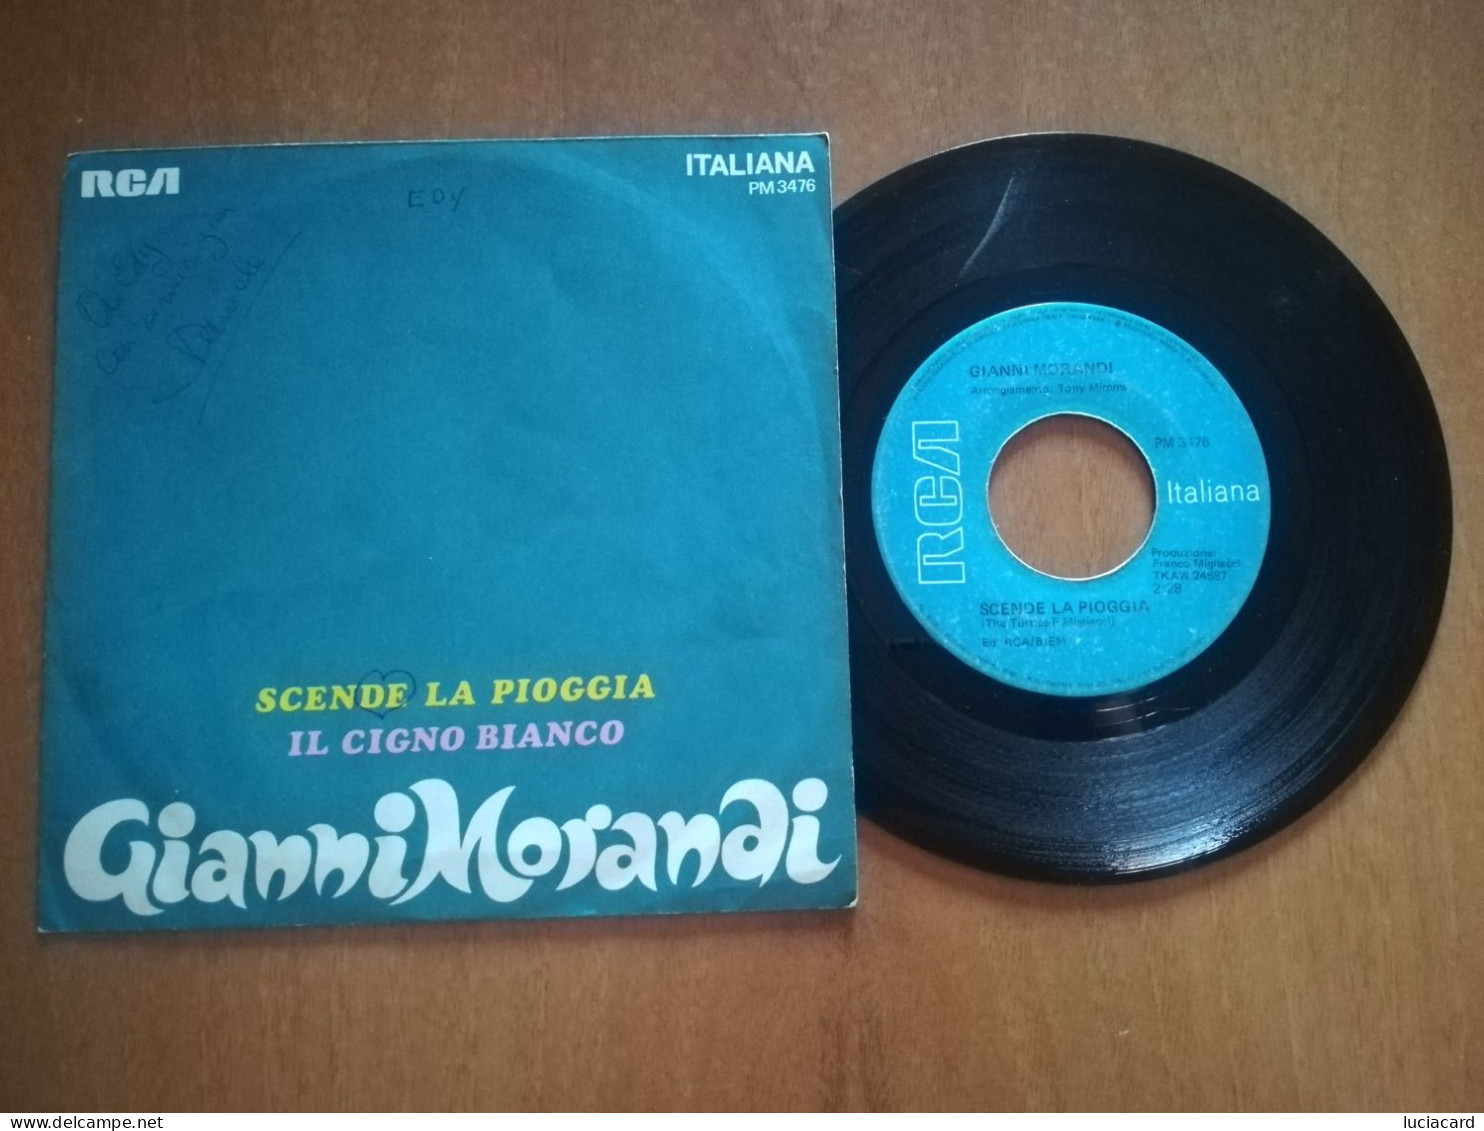 GIANNI MORANDI -SCENDE LA PIOGGIA -IL CIGNO BIANCO -DISCO VINILE 45 GIRI VINTAGE - Sonstige - Italienische Musik